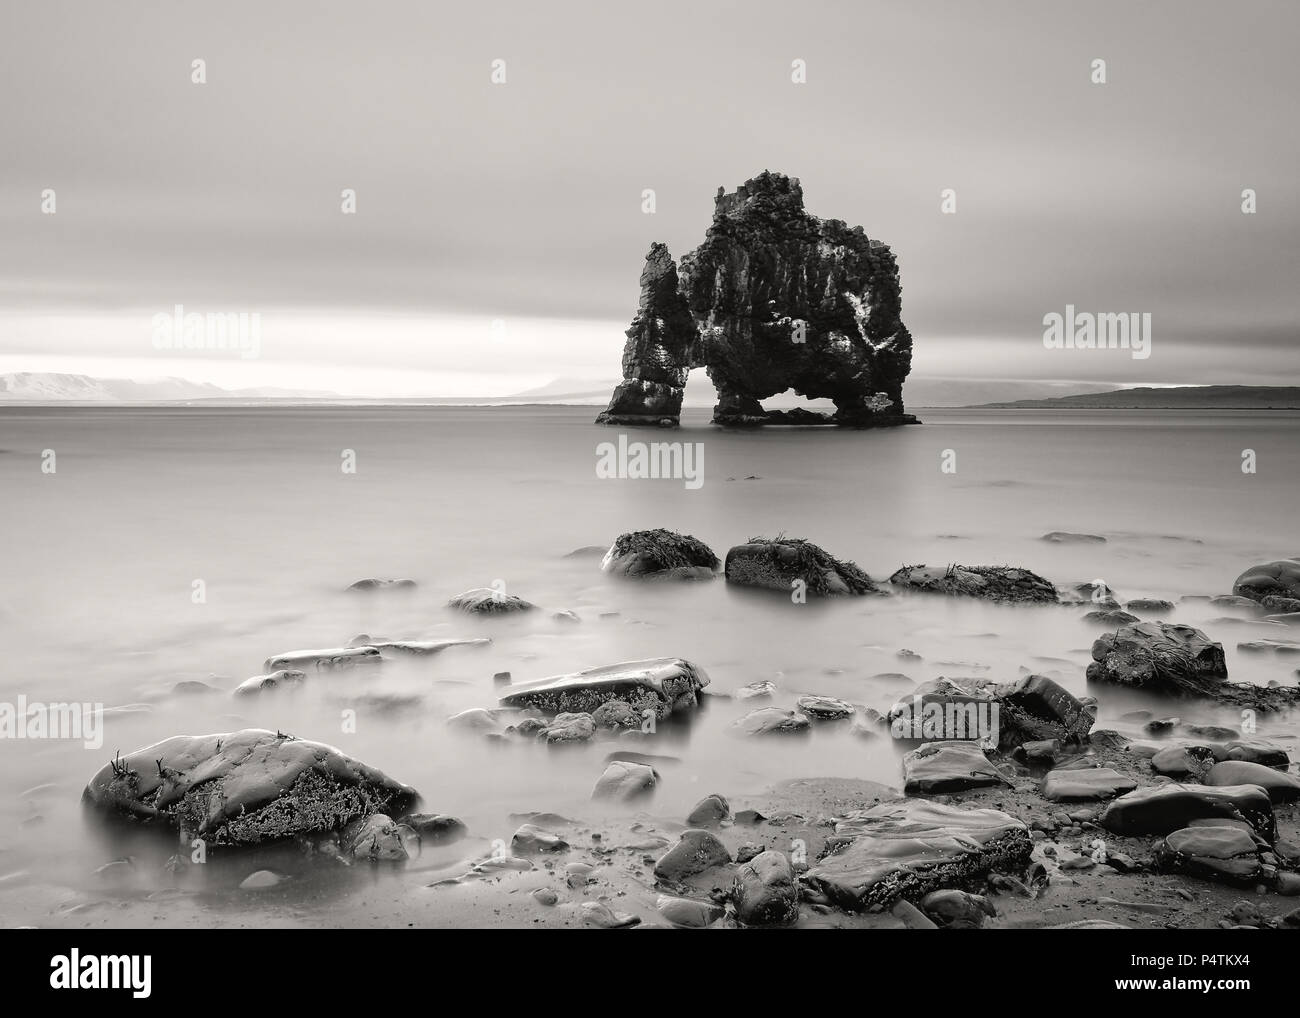 Vista panorámica de una impresionante formación rocosa en aguas poco profundas en una playa con piedras - Ubicación: Islandia, en la costa oriental de la península Vatnsnes en el Nort Foto de stock